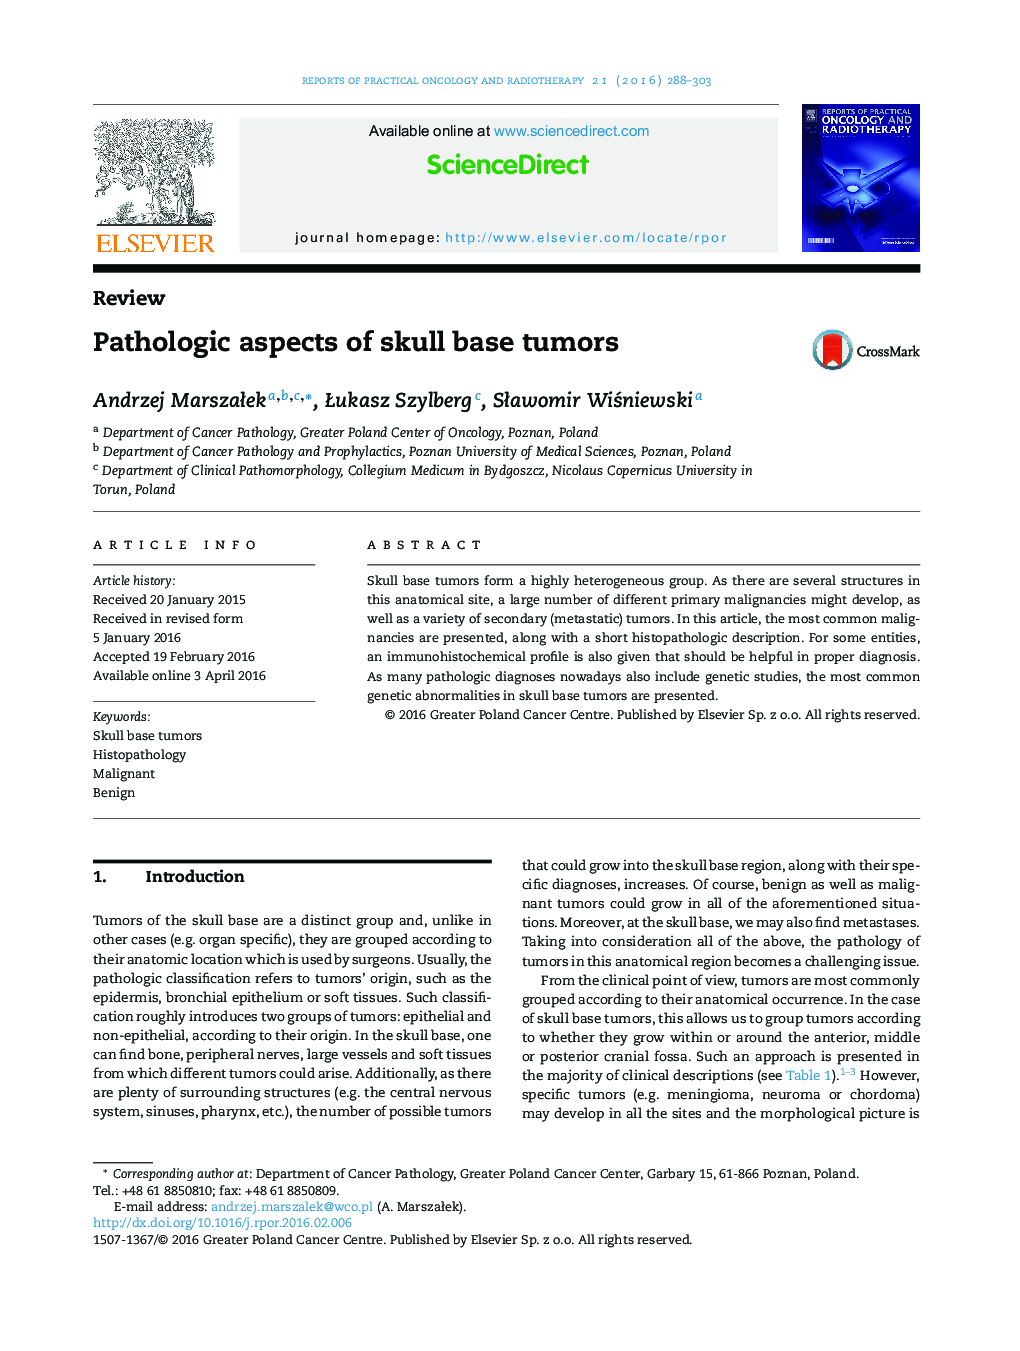 Pathologic aspects of skull base tumors